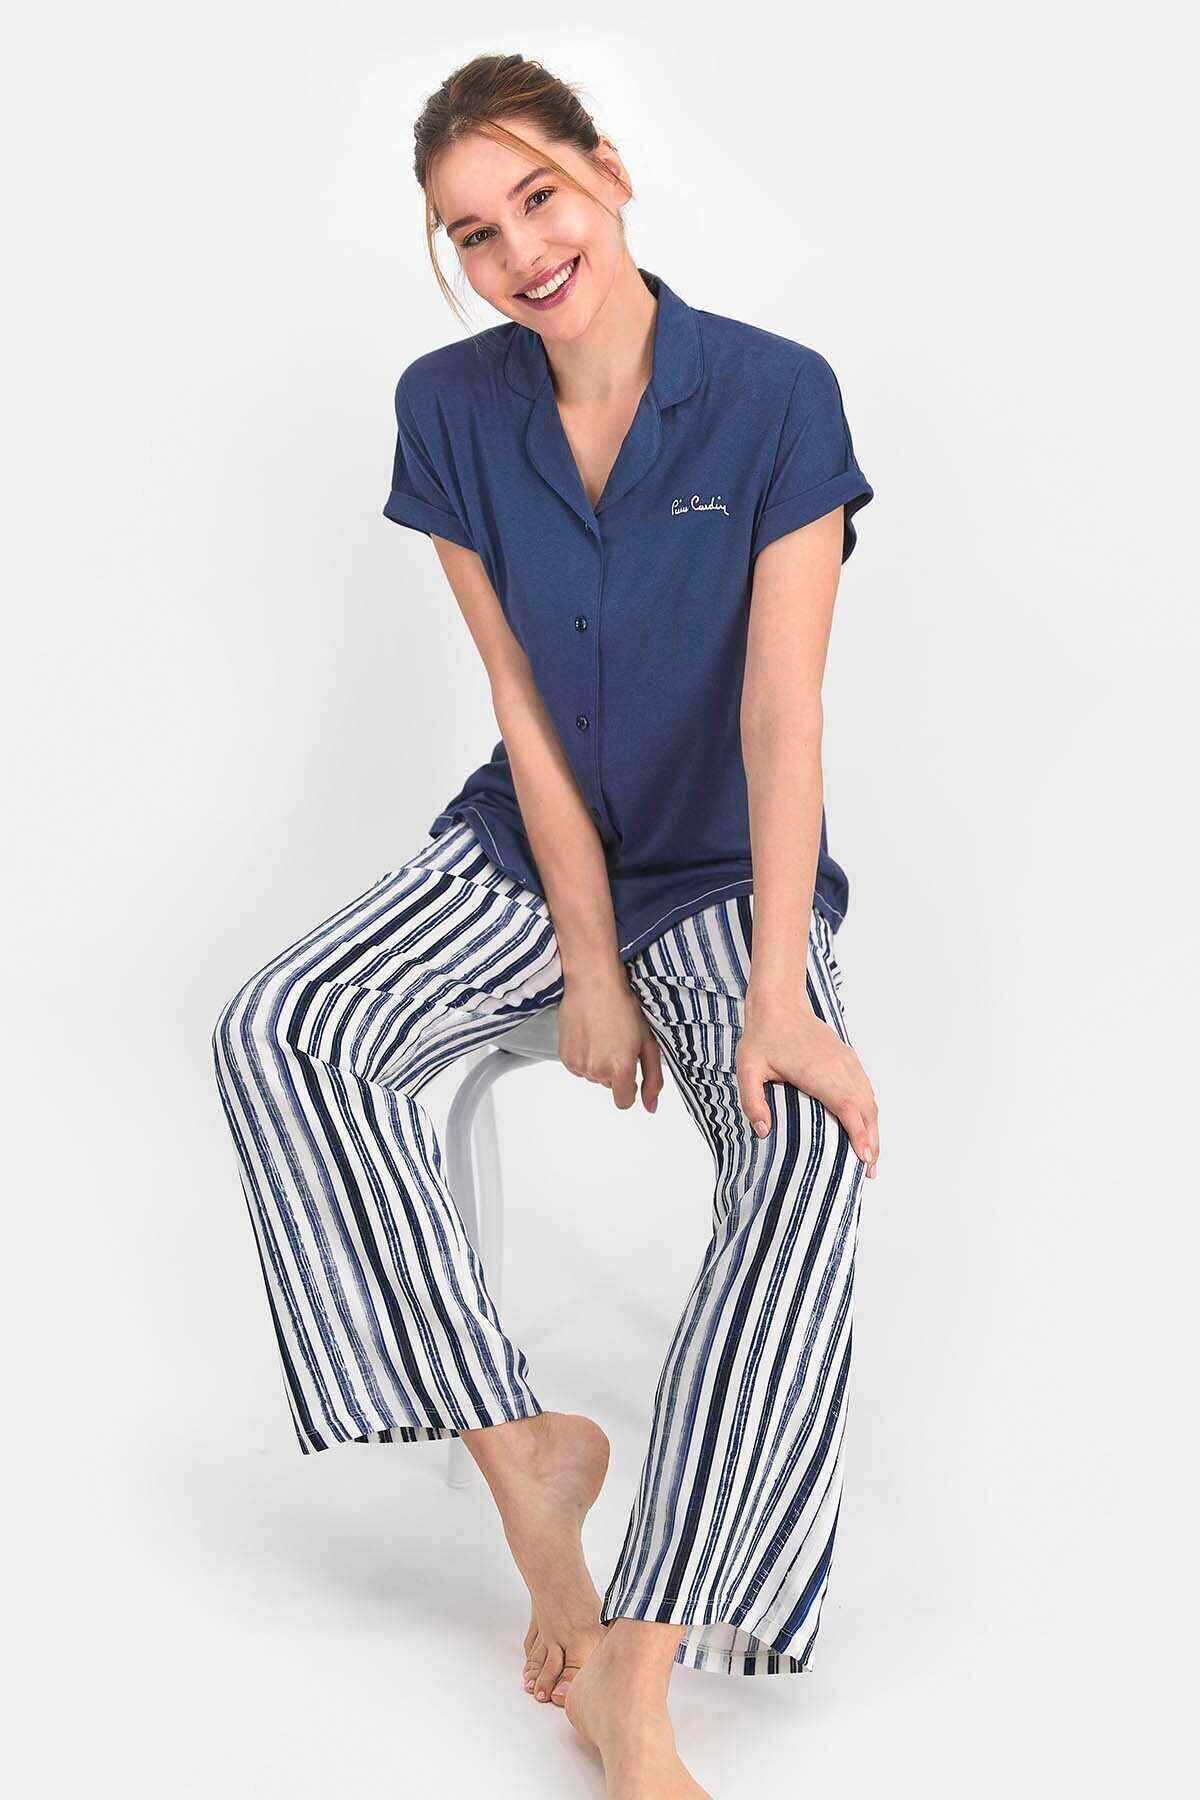 Pierre Cardin Kadın Indigo Striped Dark Gömlek Pijama - Pc7727-s